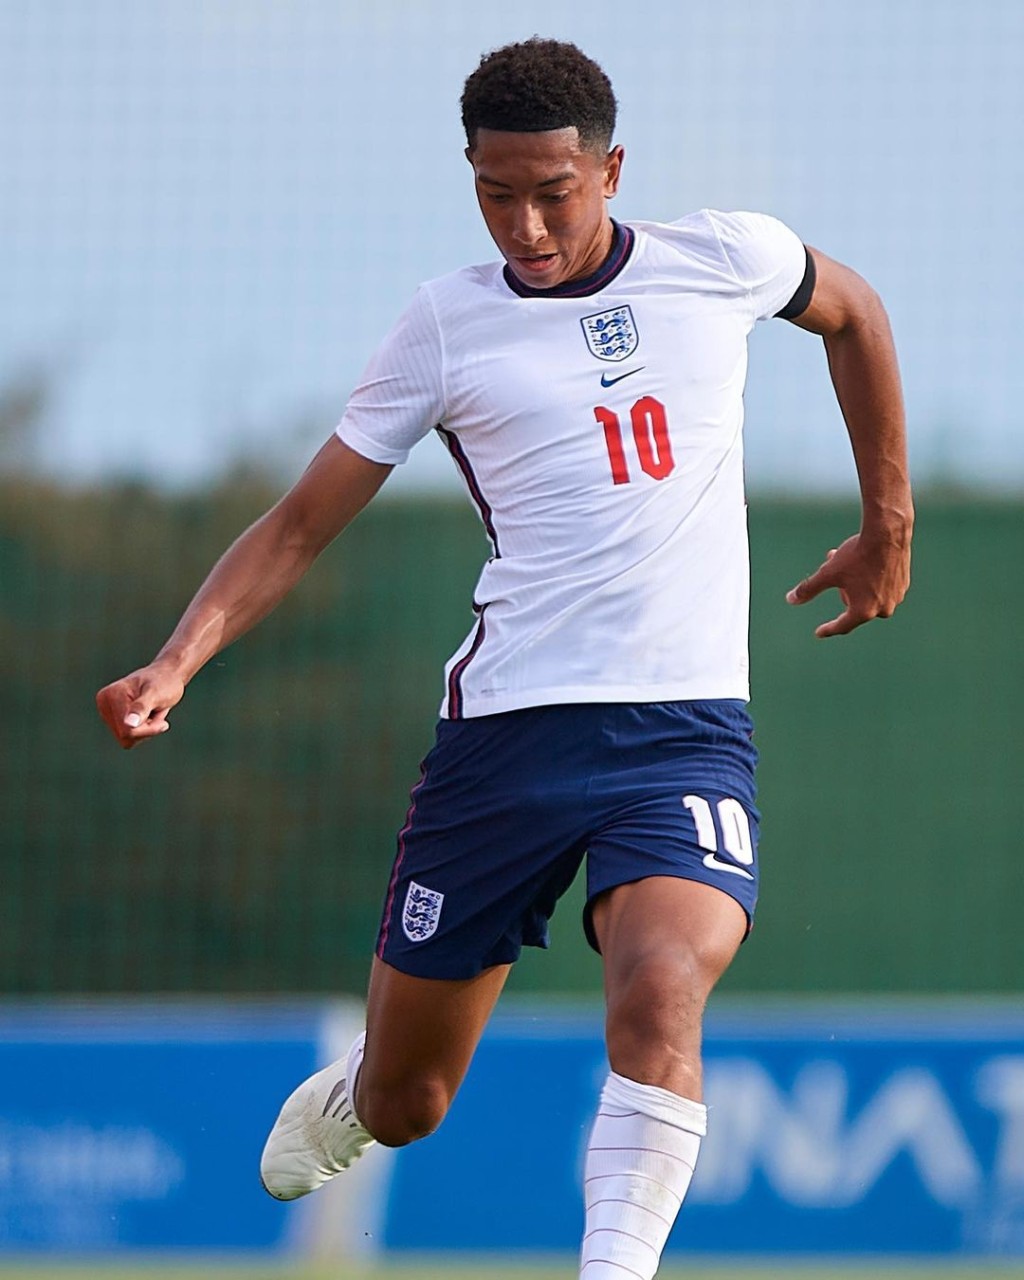 17岁的祖比比宁咸 本身为英格兰U18小国脚。网上图片